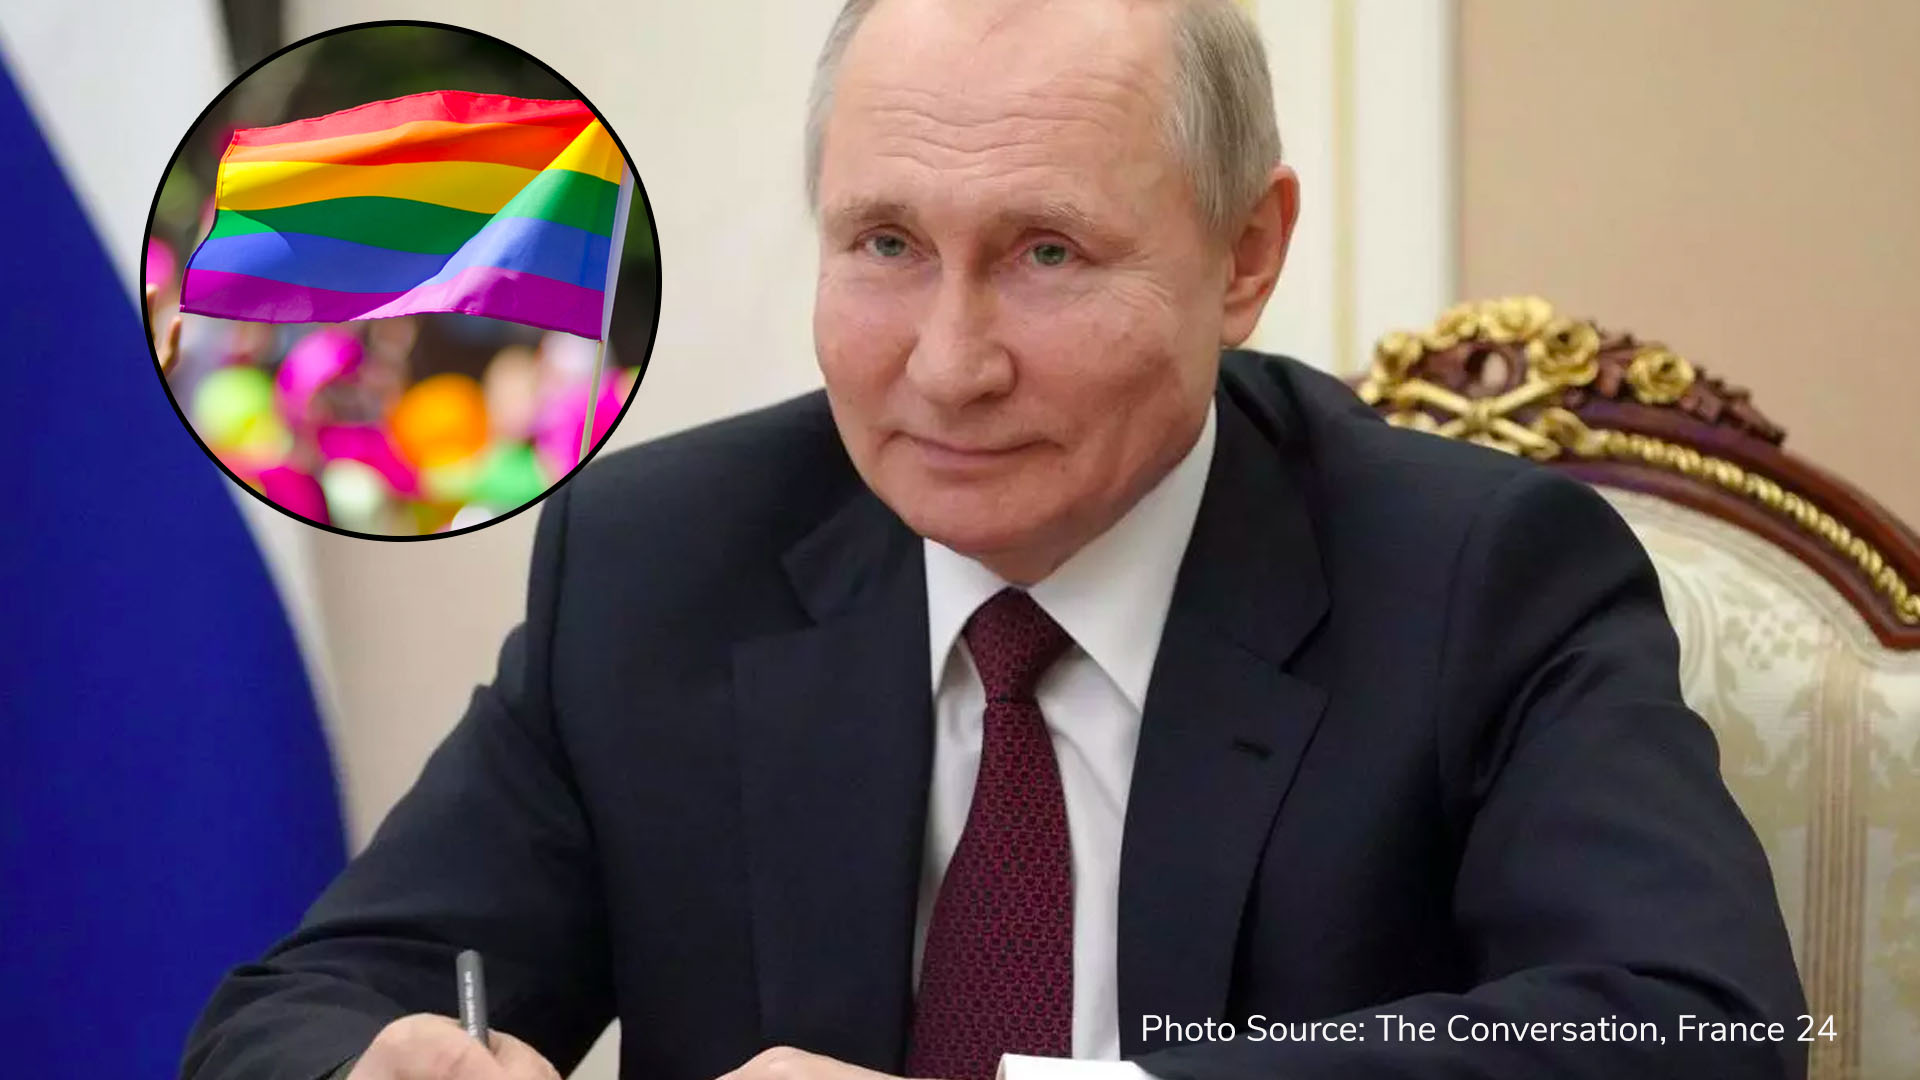 Putin bans same-sex marriage and transgender adoption